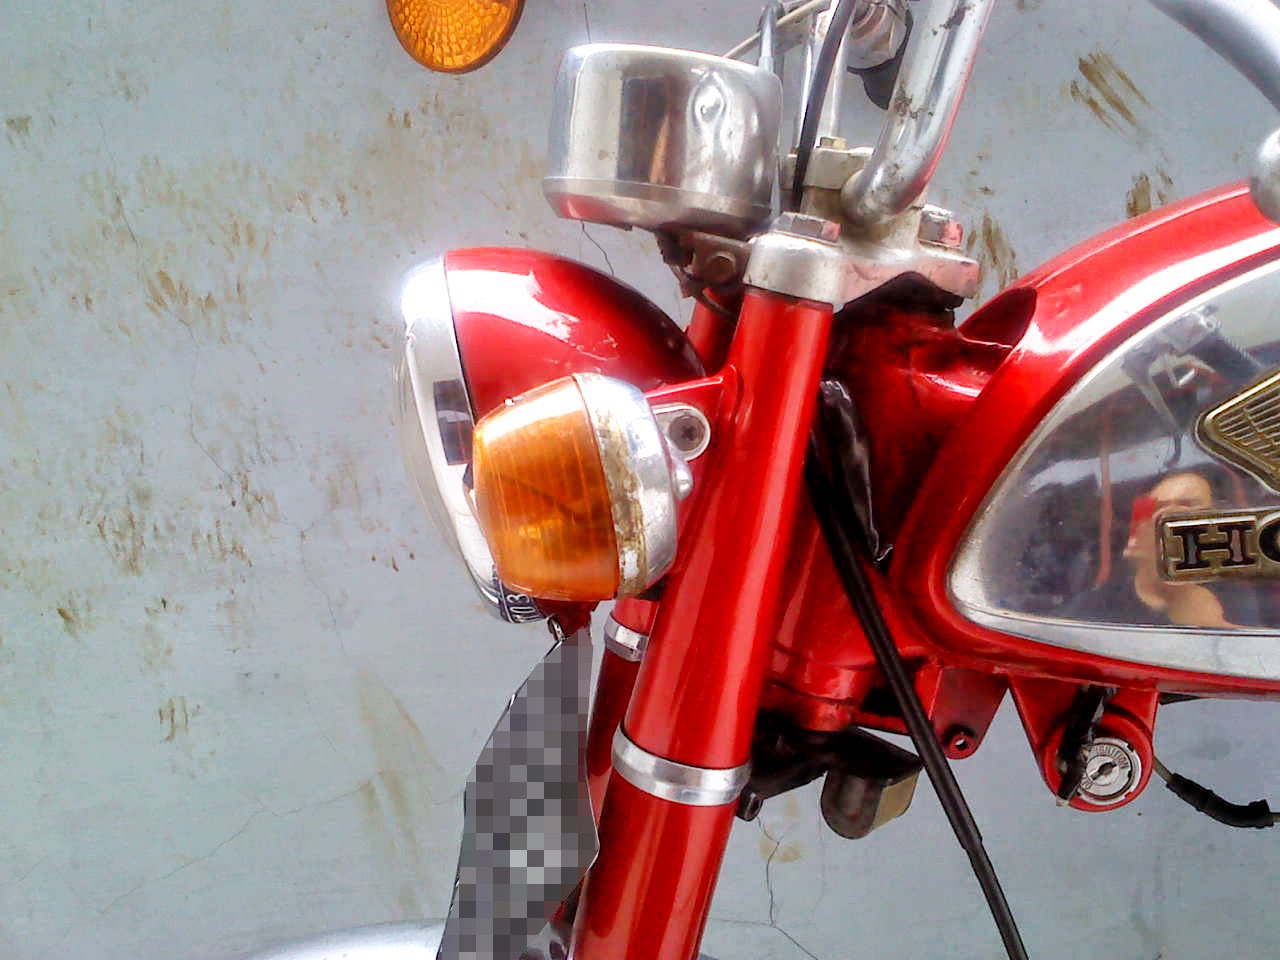 Kumpulan Gambar Sepeda Motor Honda S90Z Era 70an KENAROK MOTORCYCLE